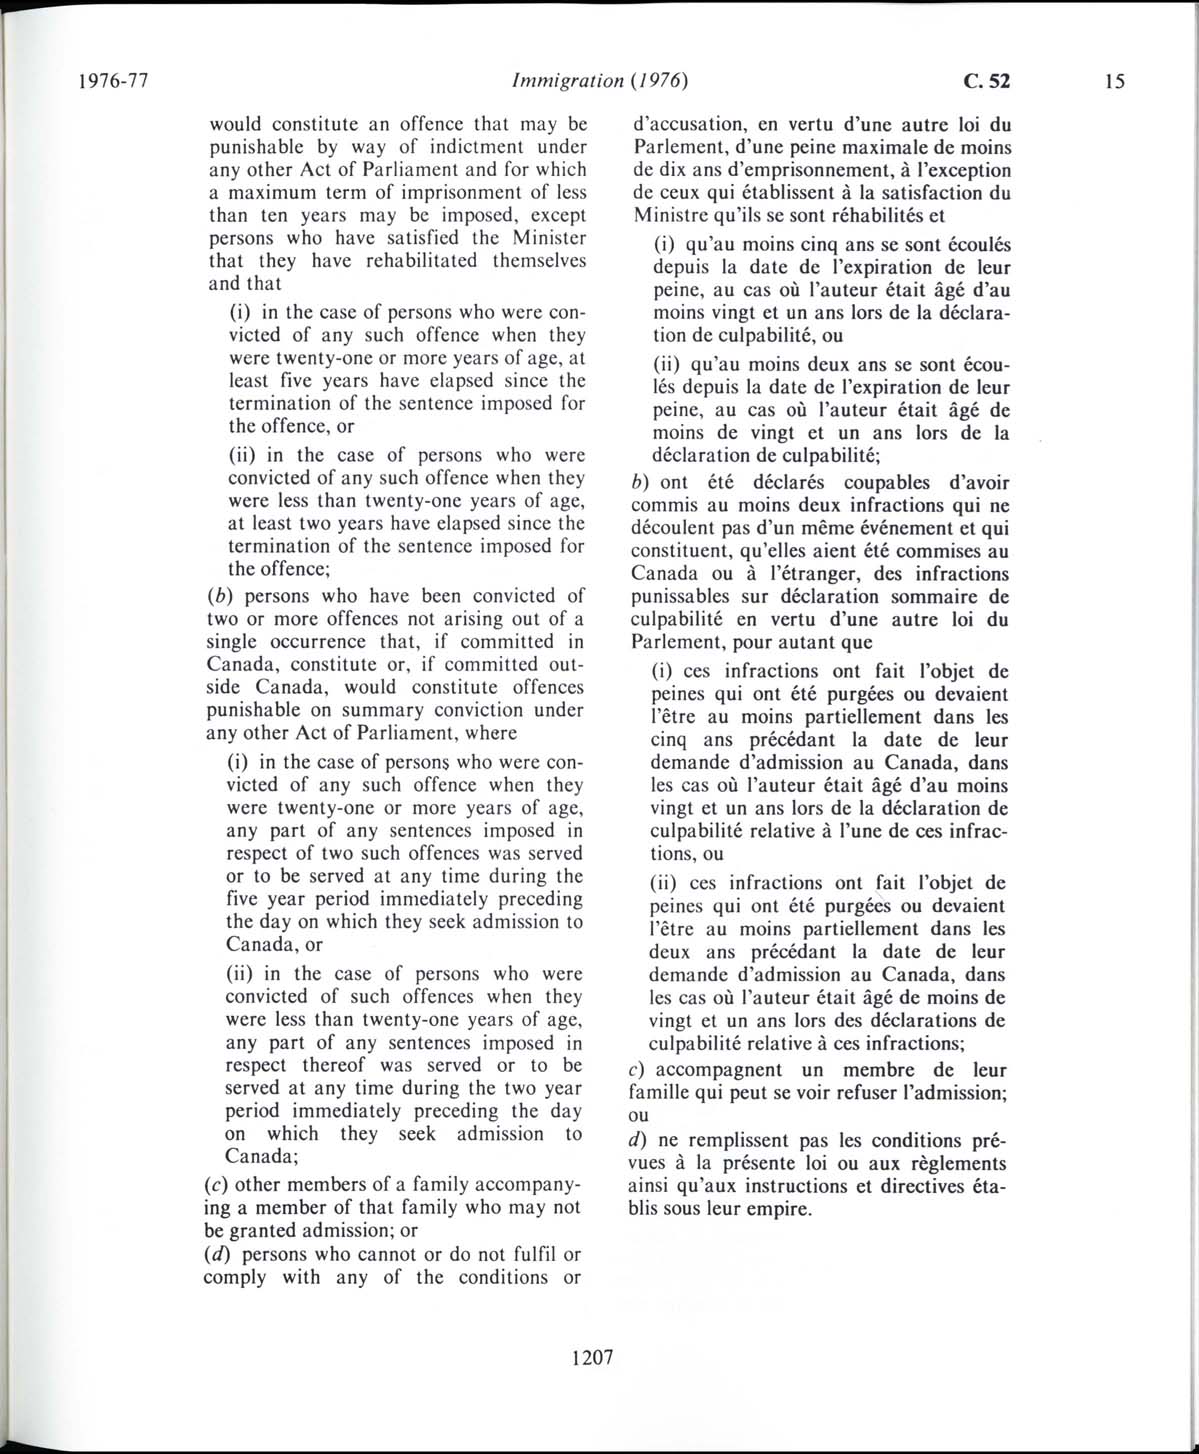 Page 1207 Loi sur l’immigration de 1976